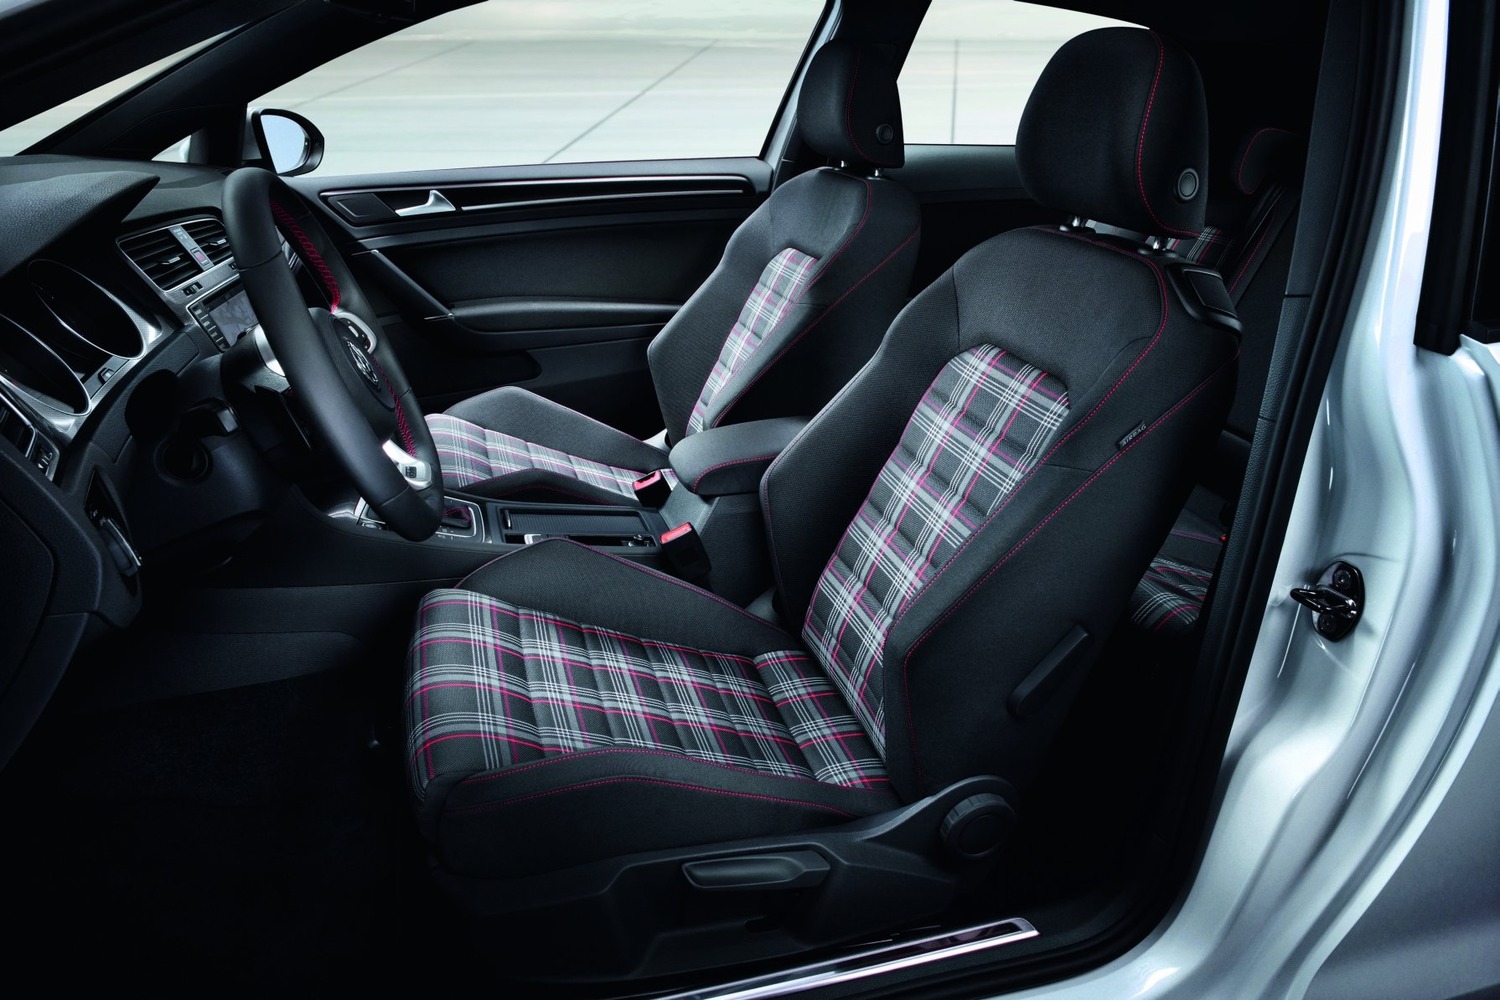 хэтчбек 3 дв. Volkswagen Golf GTI 2013 - 2016г выпуска модификация 2.0 AMT (230 л.с.)